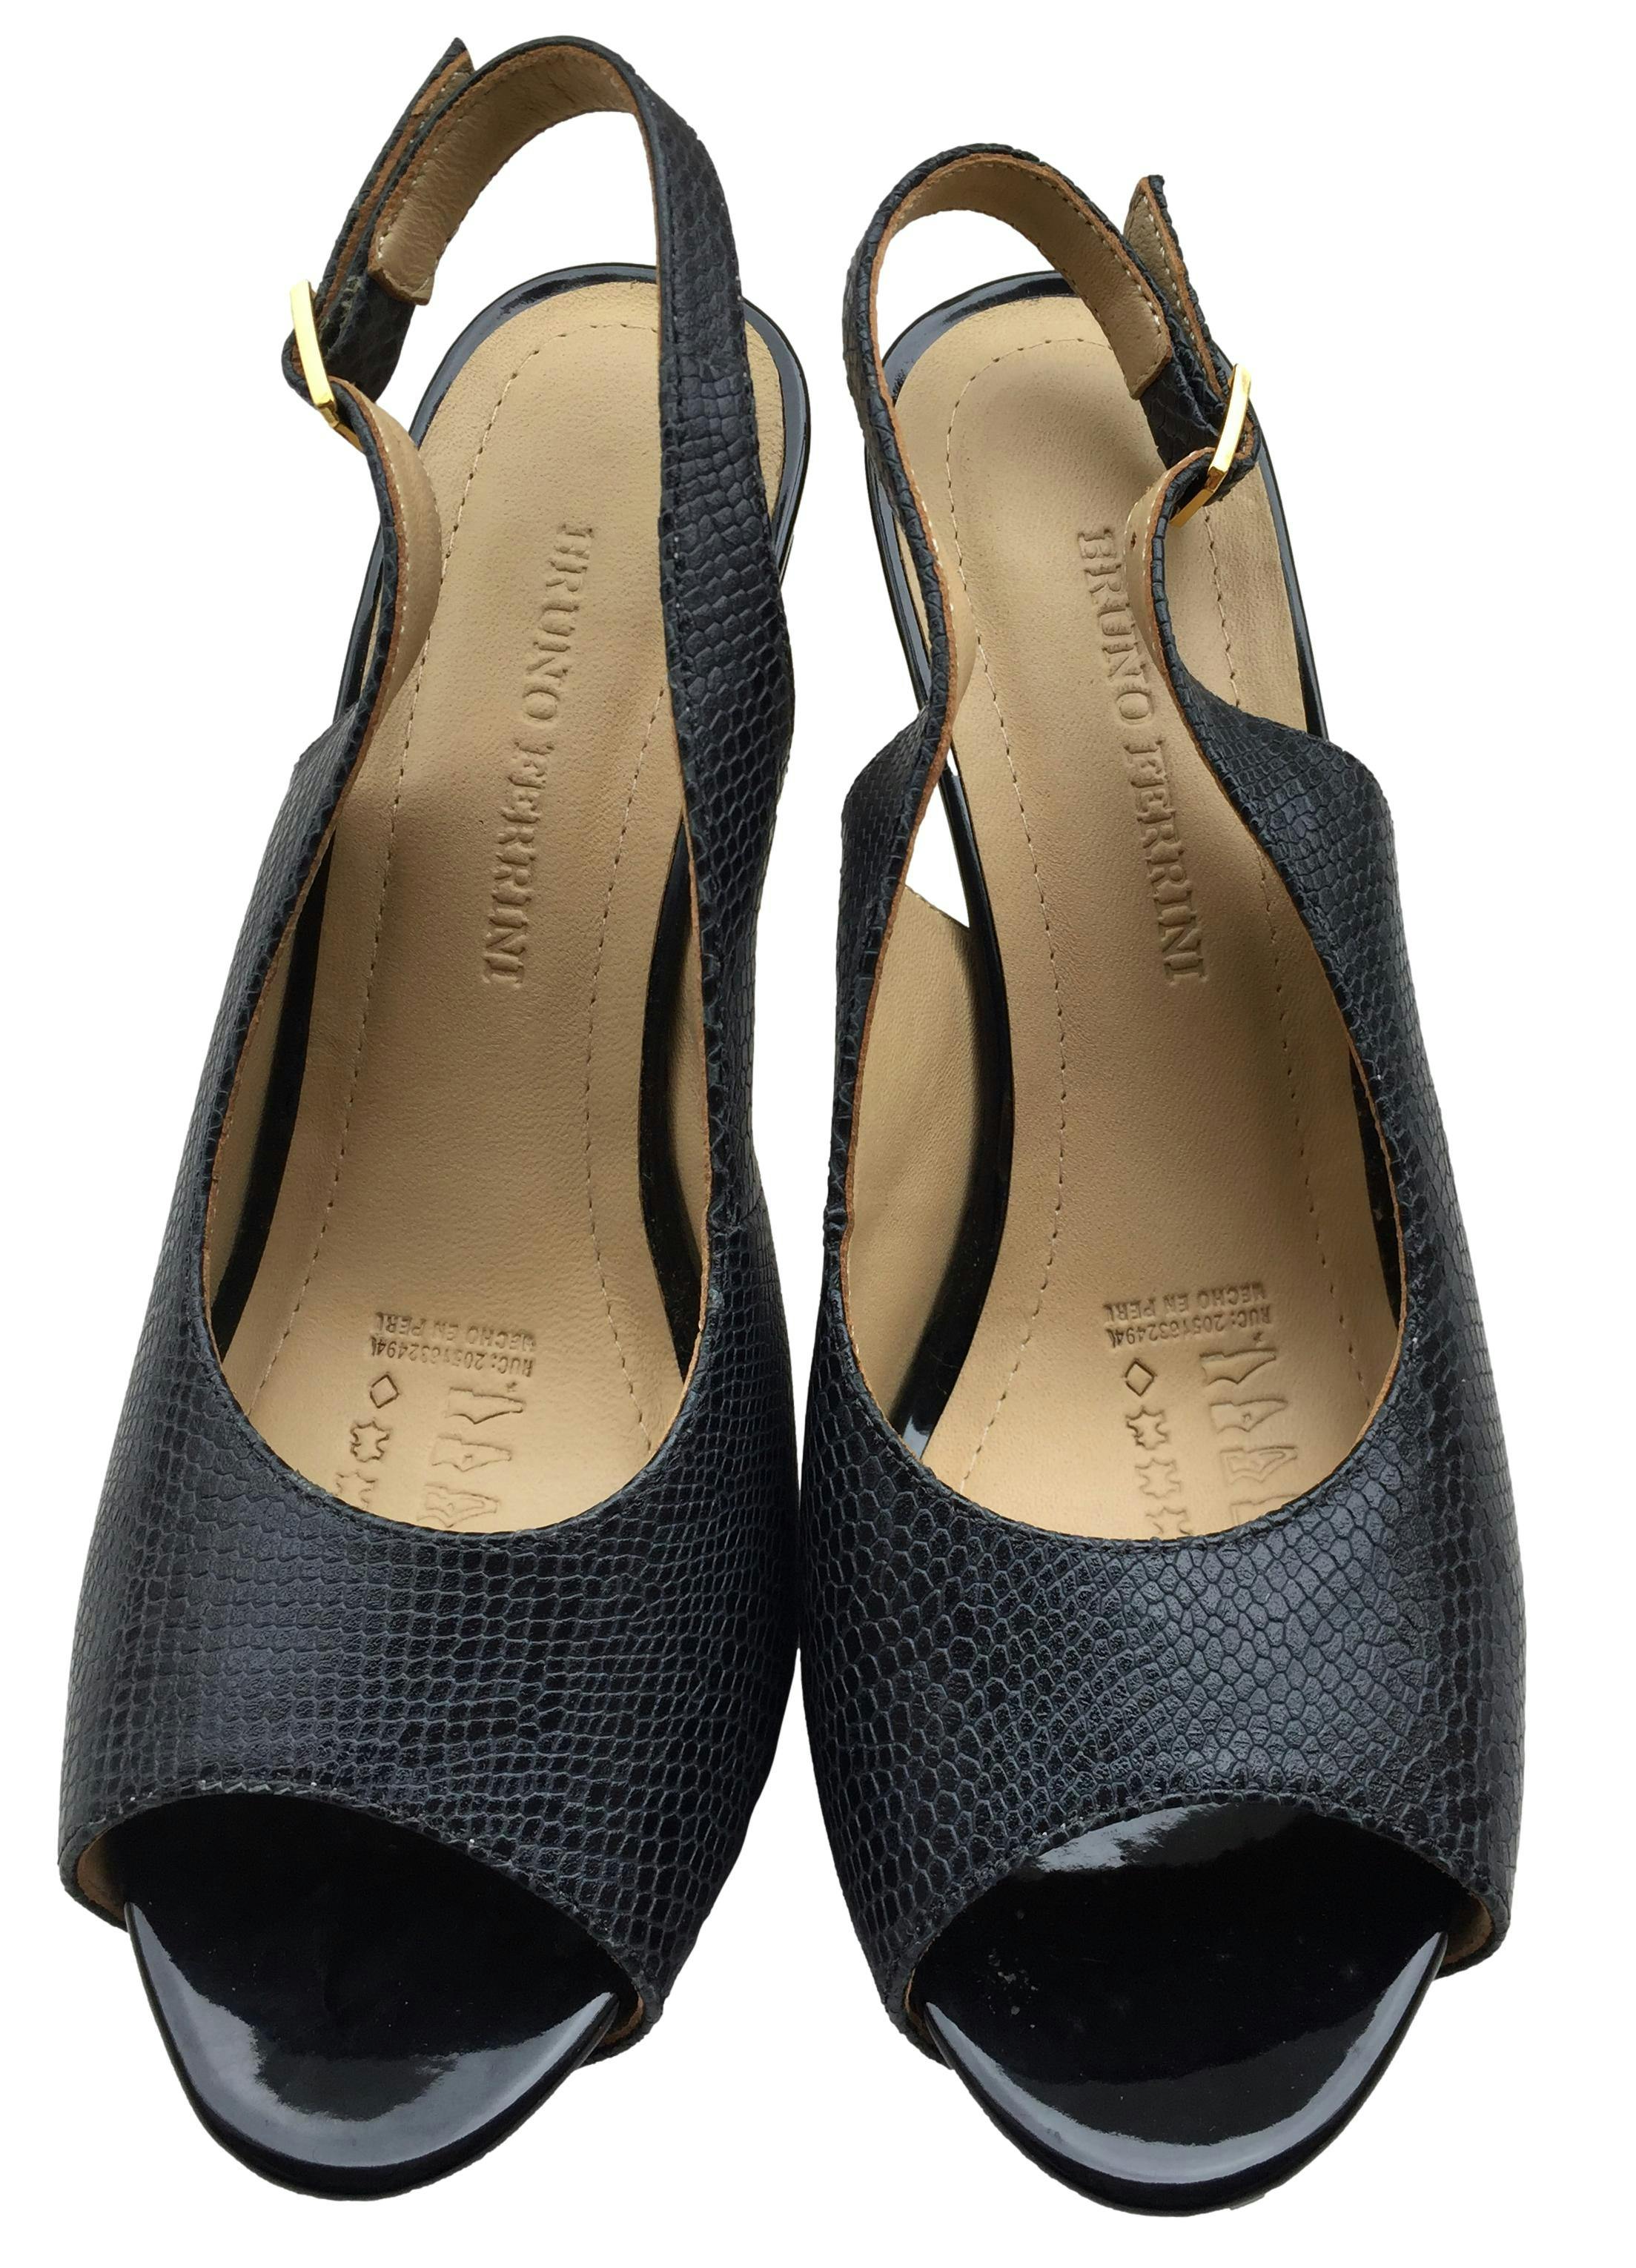 Zapatos de punta decubierta Bruno Ferrini, de cuero con textura pitón y taco delgado. Taco 11 cm, Plataforma 3 cm. Estado 9/10. Precio original S/. 319.00